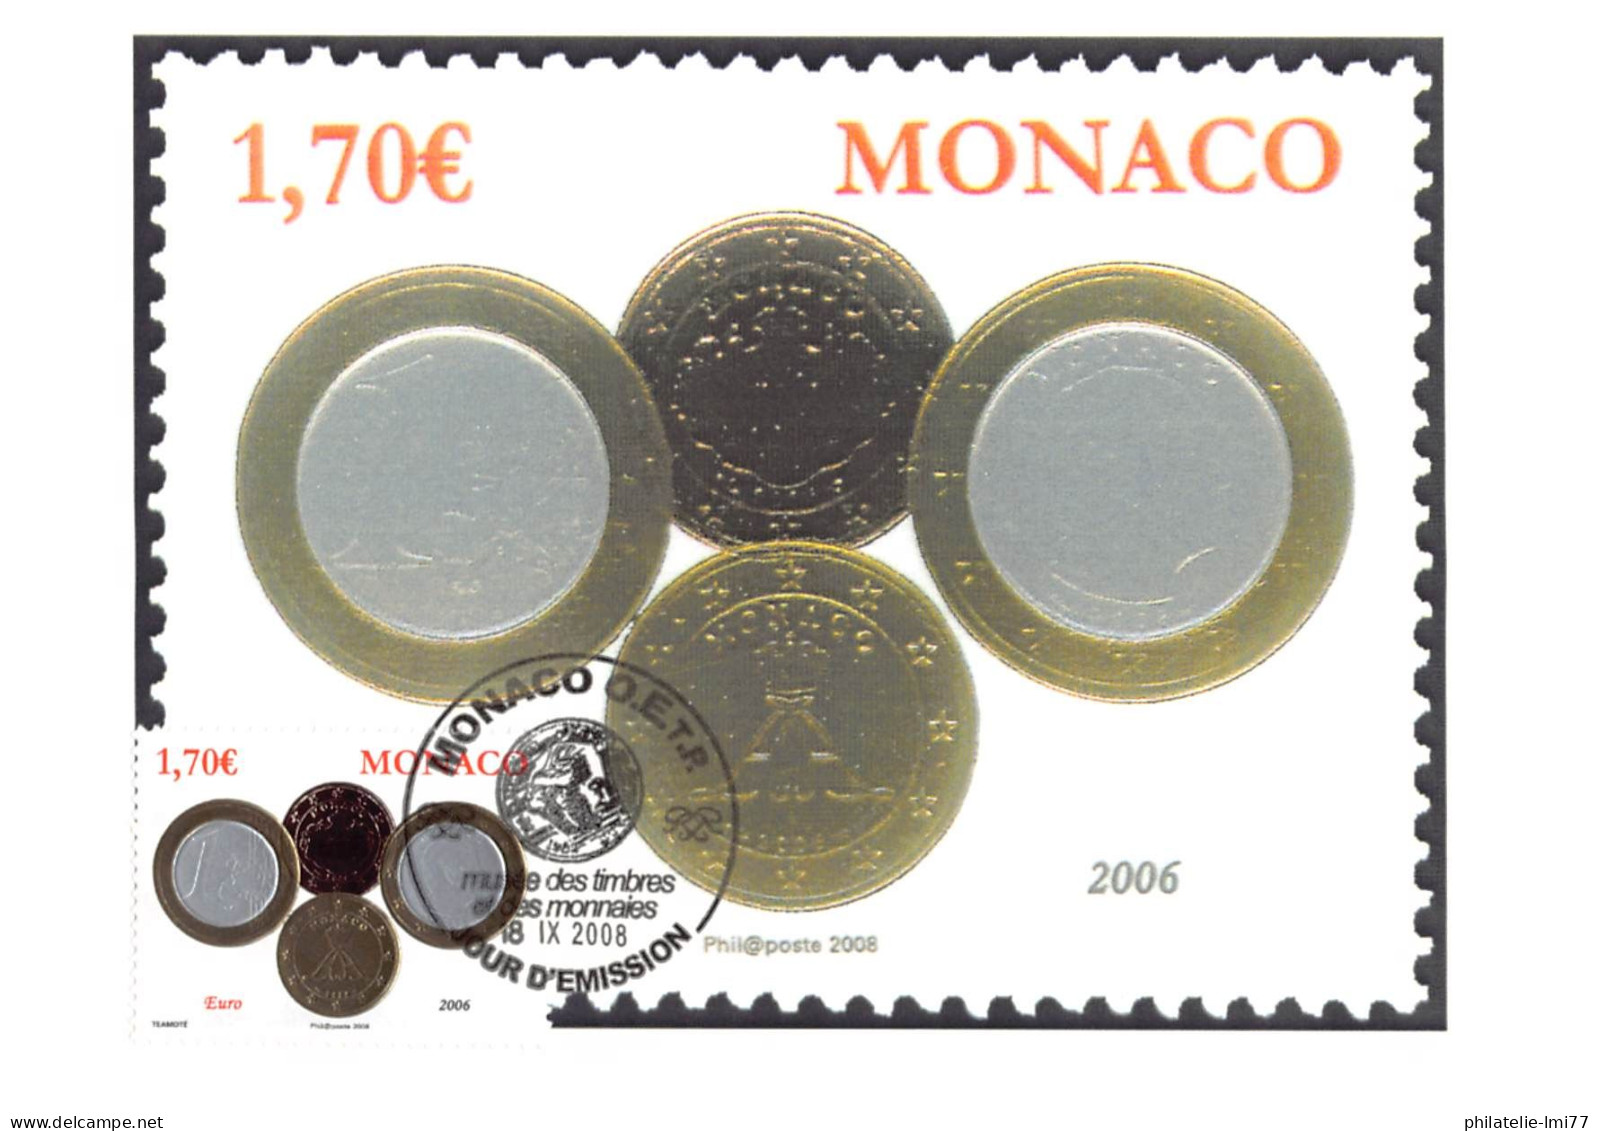 CM CEF - Série Numismatique (6 Cartes), Oblit 18/9/08 - Maximum Cards